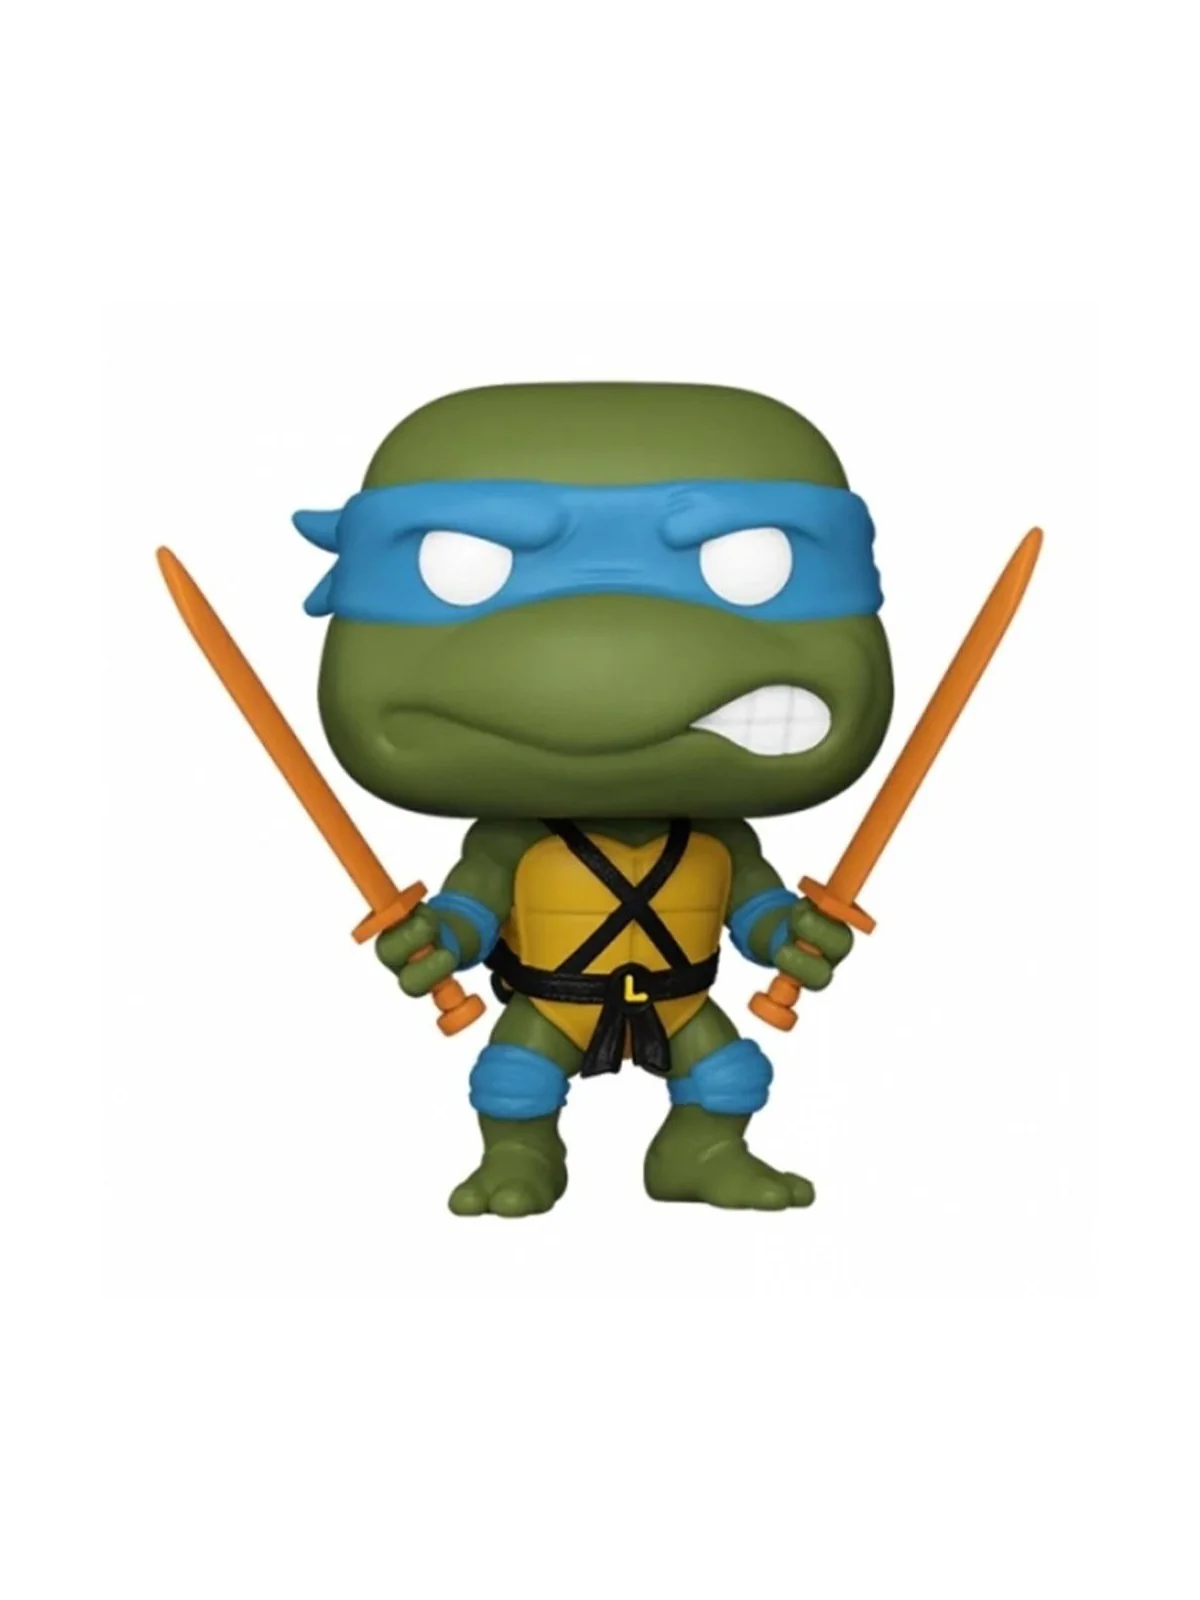 Comprar Funko POP! Tortugas Ninja: Leonardo (1555) barato al mejor pre